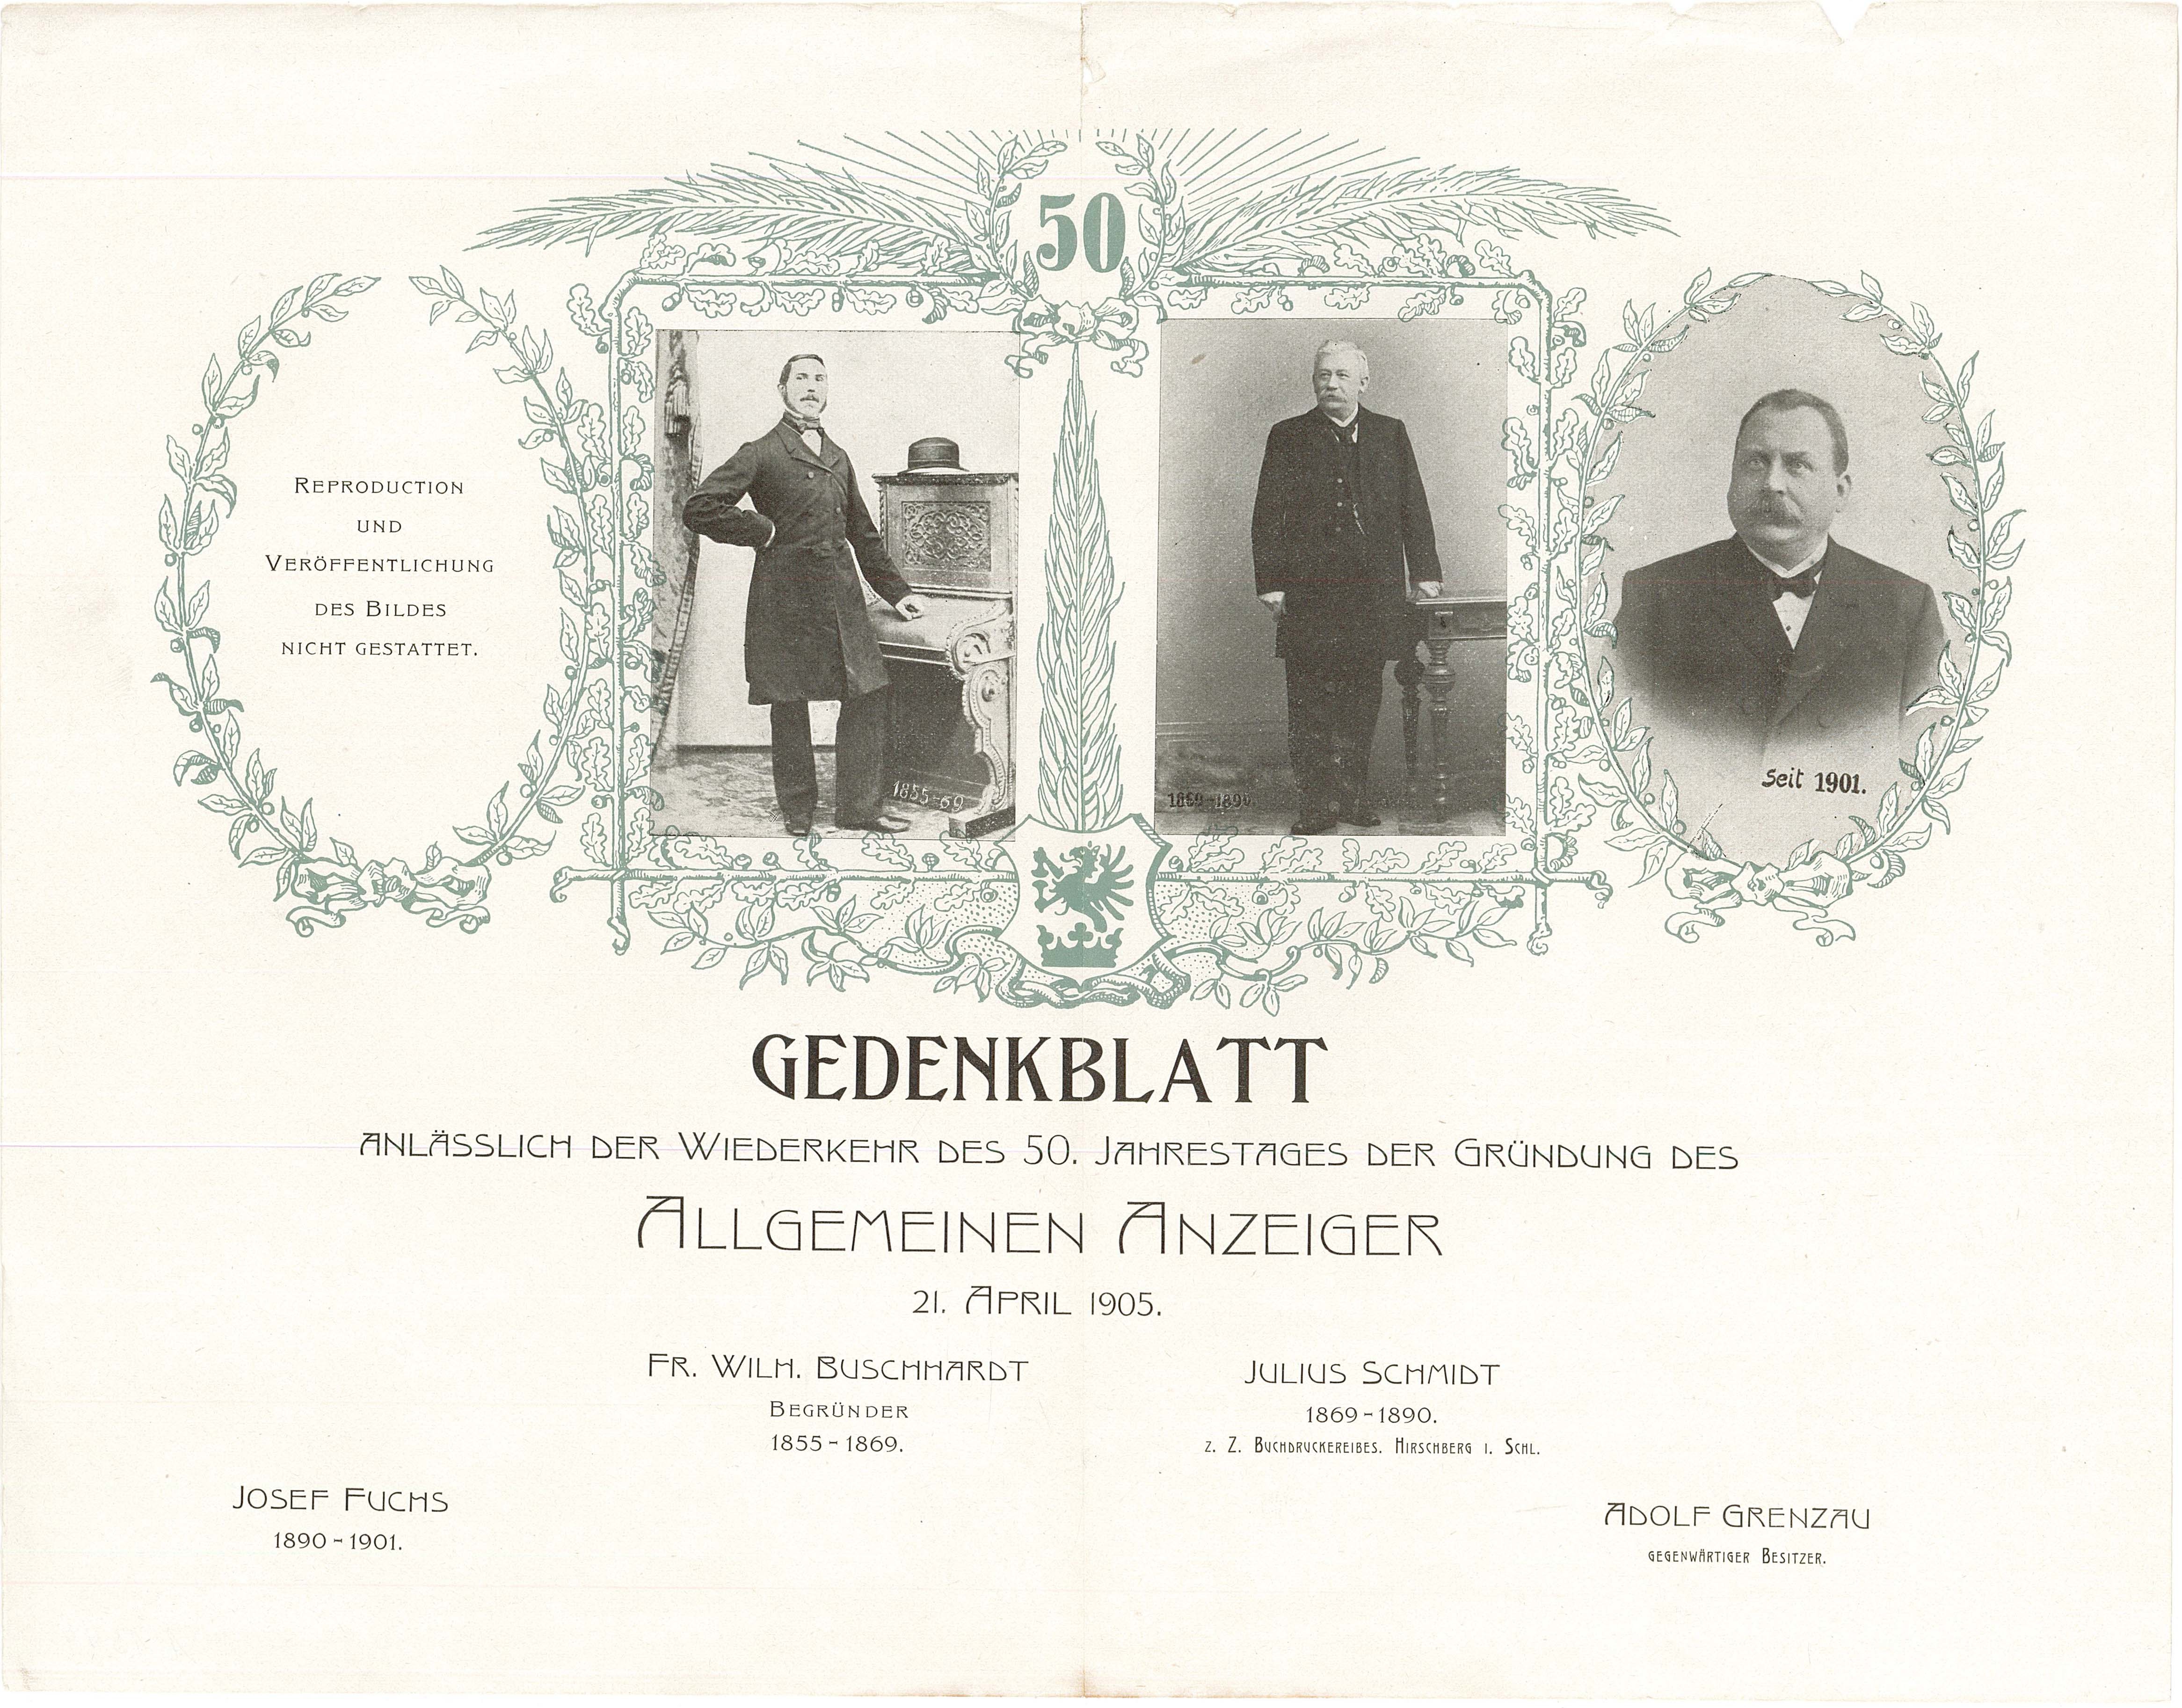 Gedenkblatt zum 50. Jahrestag der Gründung des Allgemeinen Anzeigers, 21. April 1905 (Museum Wolmirstedt RR-F)